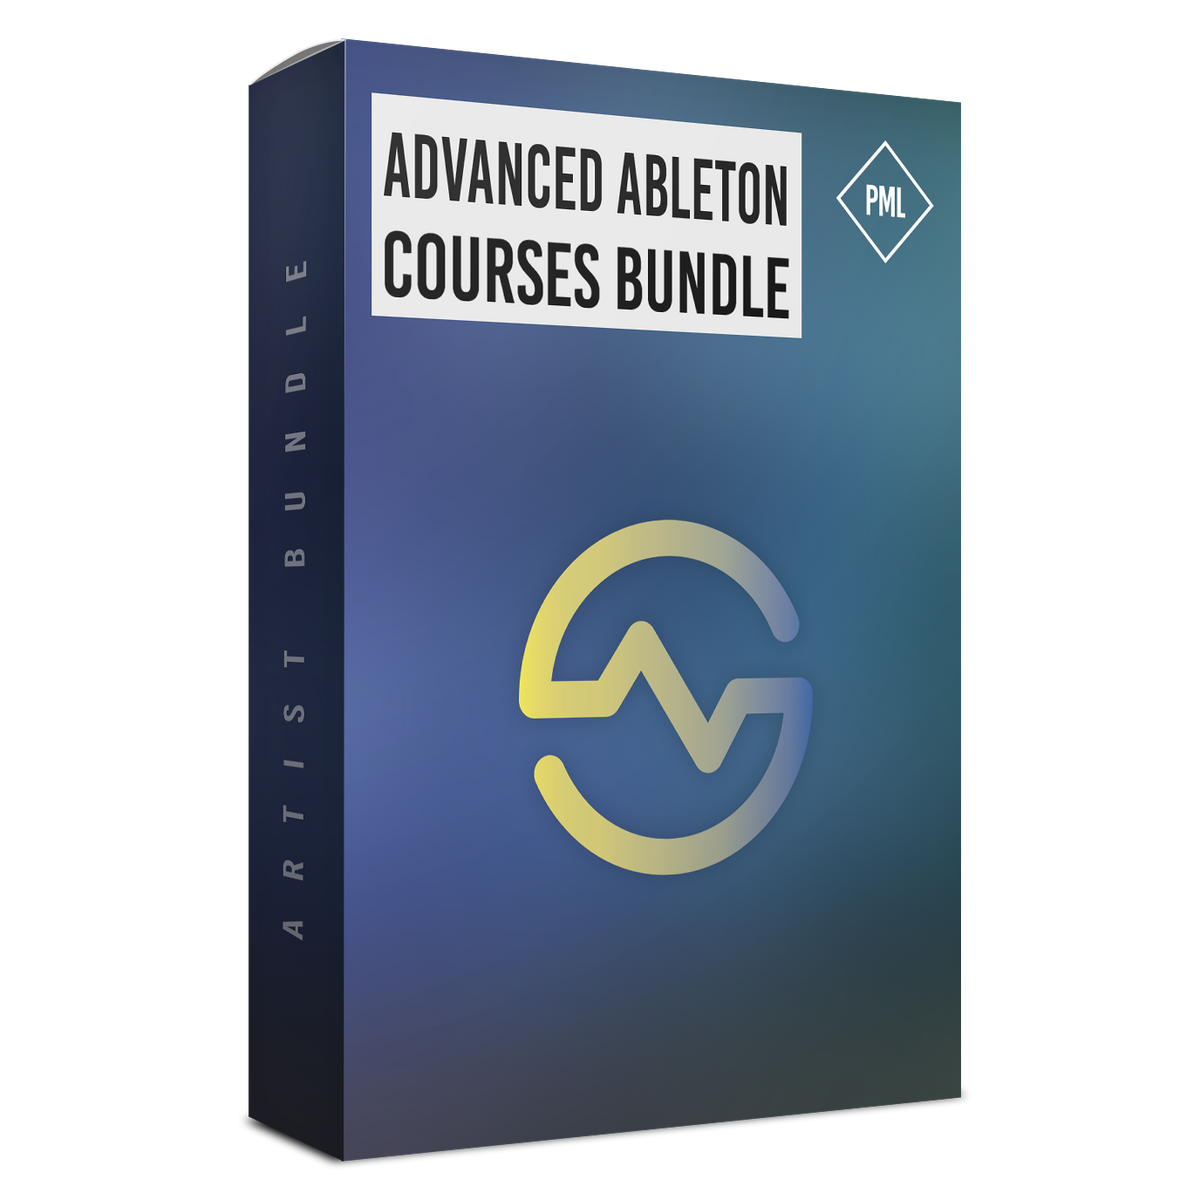 Advanced Ableton Courses Bundle Product Box